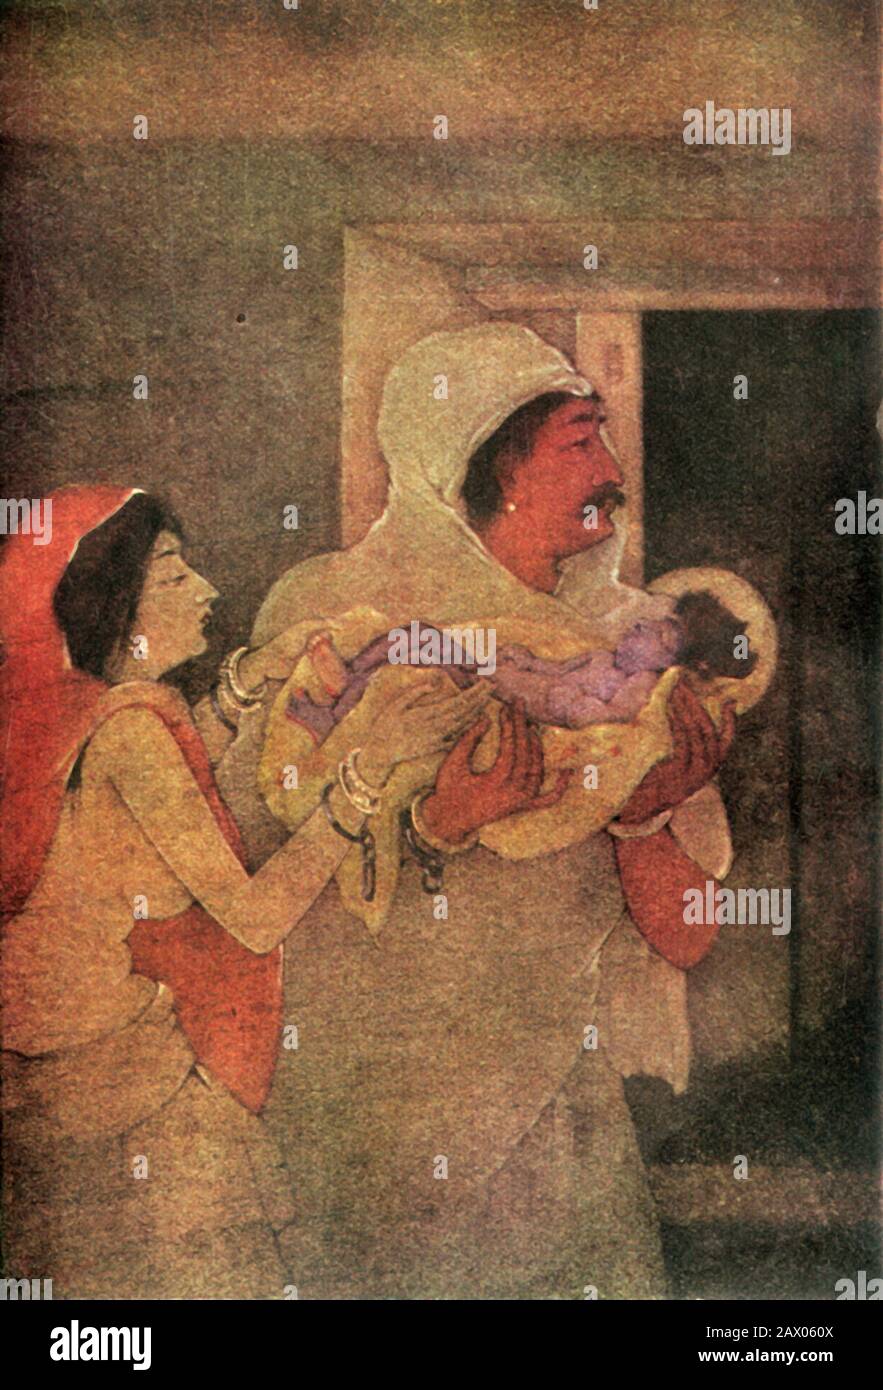 'El Nacimiento De Krishna', 1920. Krishna nace de Devaki y su marido, Vasudeva, que transporta secretamente al infante a través de Yamuna para la seguridad en el exilio. De "Mitos de los hindúes &amp; Budistas", por la Hermana Nivedita y Ananda K. Coomaraswamy. [George G. Harrap &amp; Company Ltd, Londres, 1920] Foto de stock